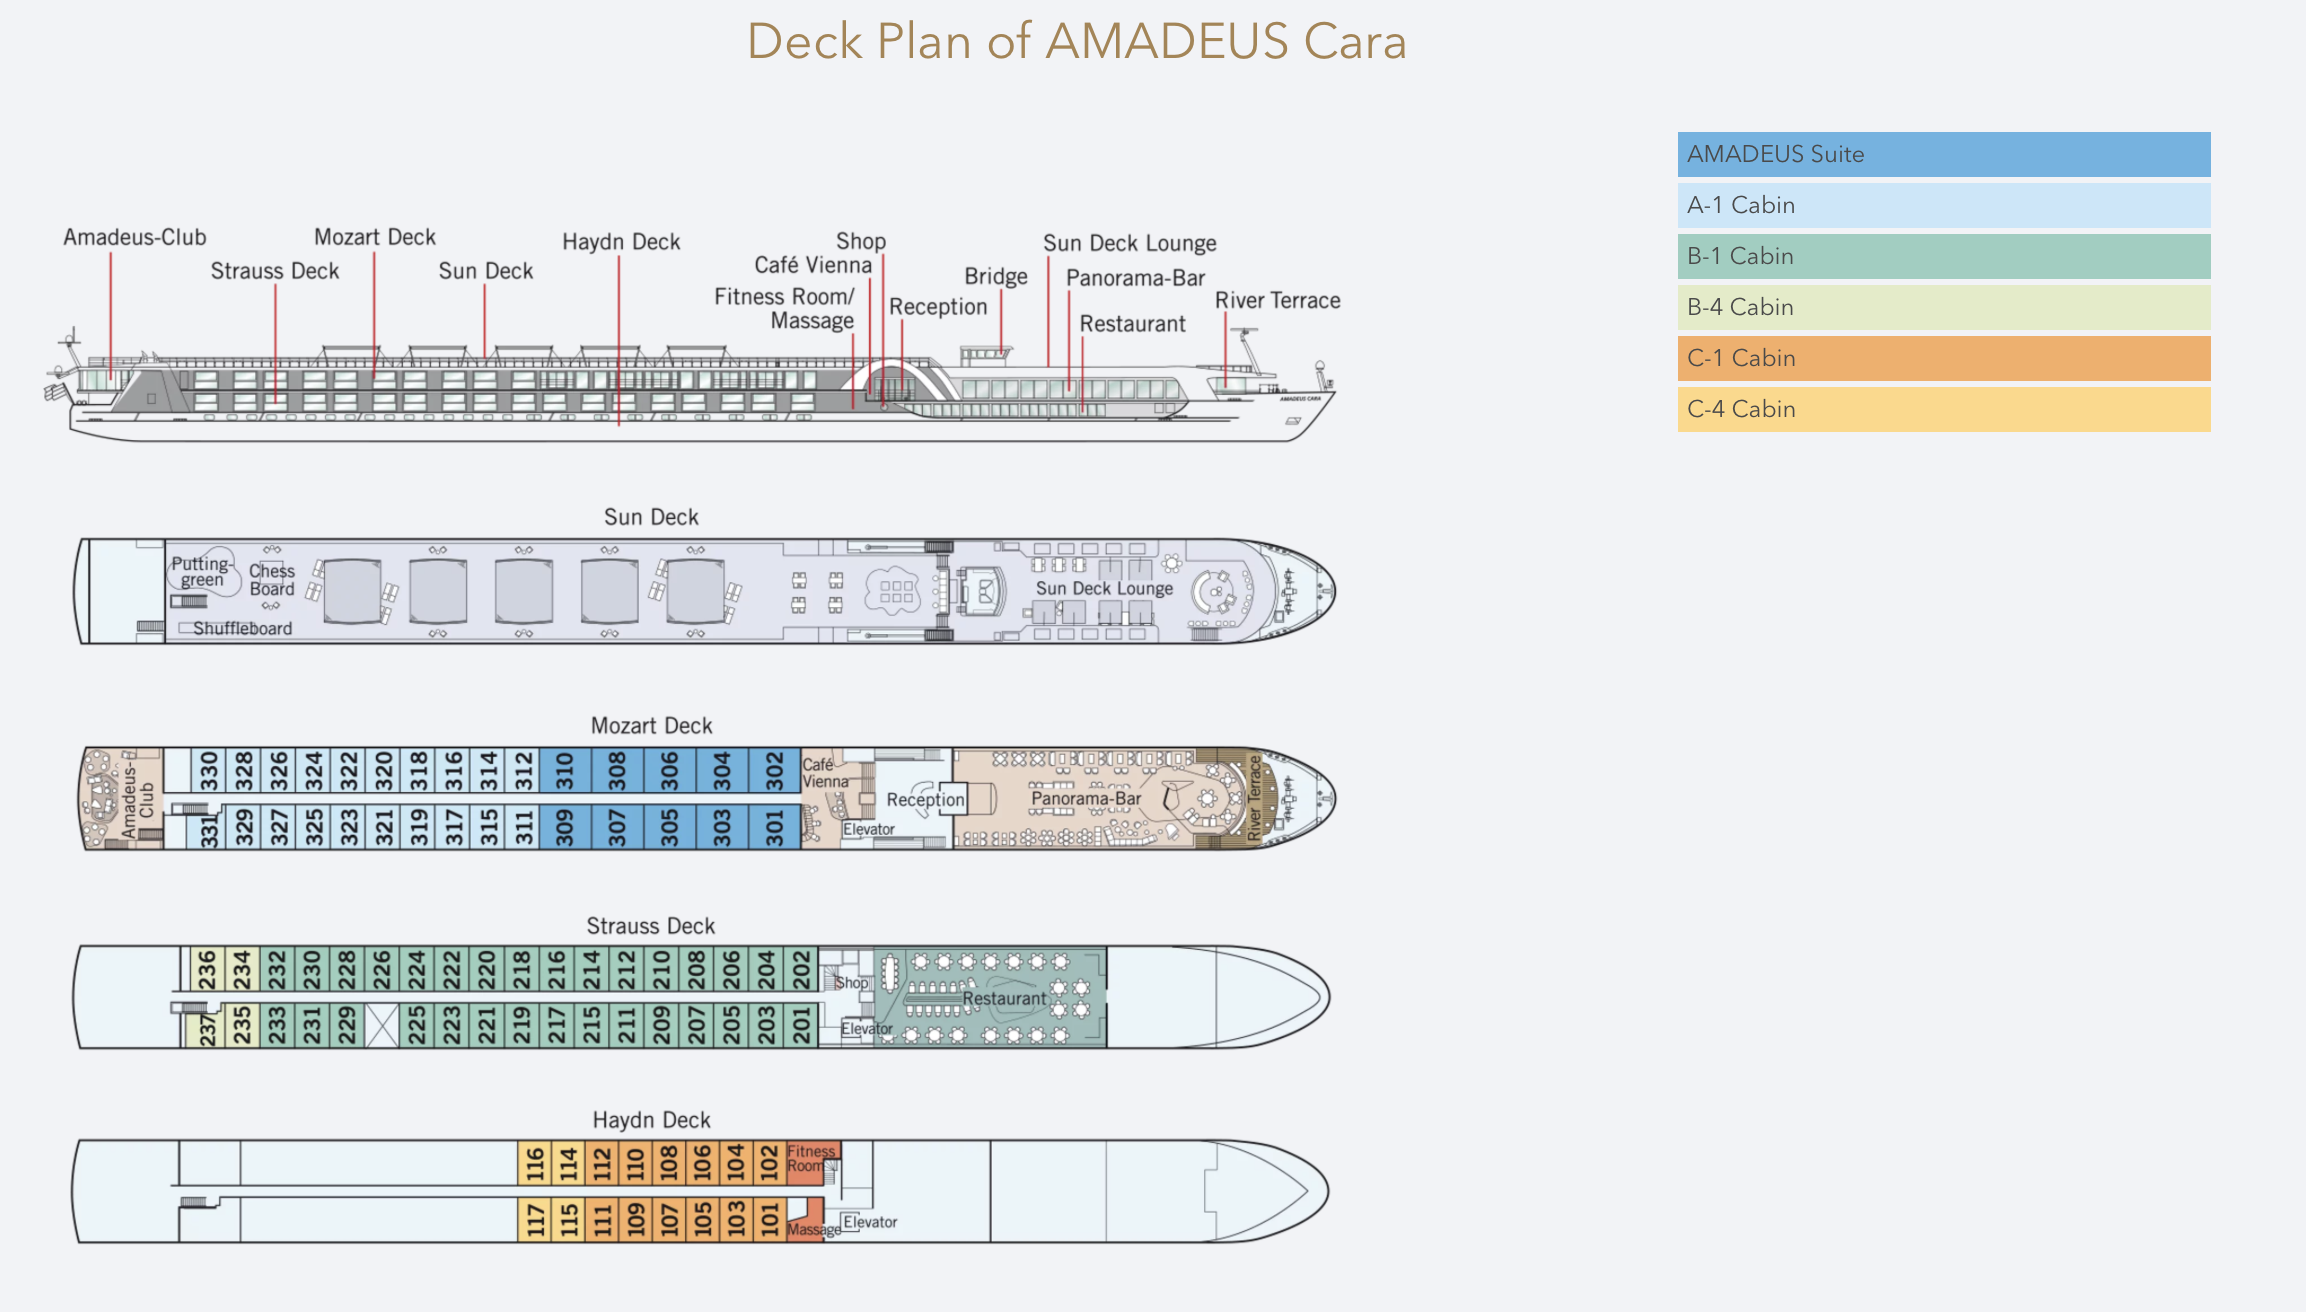 Amadeus Cara Deck Plan